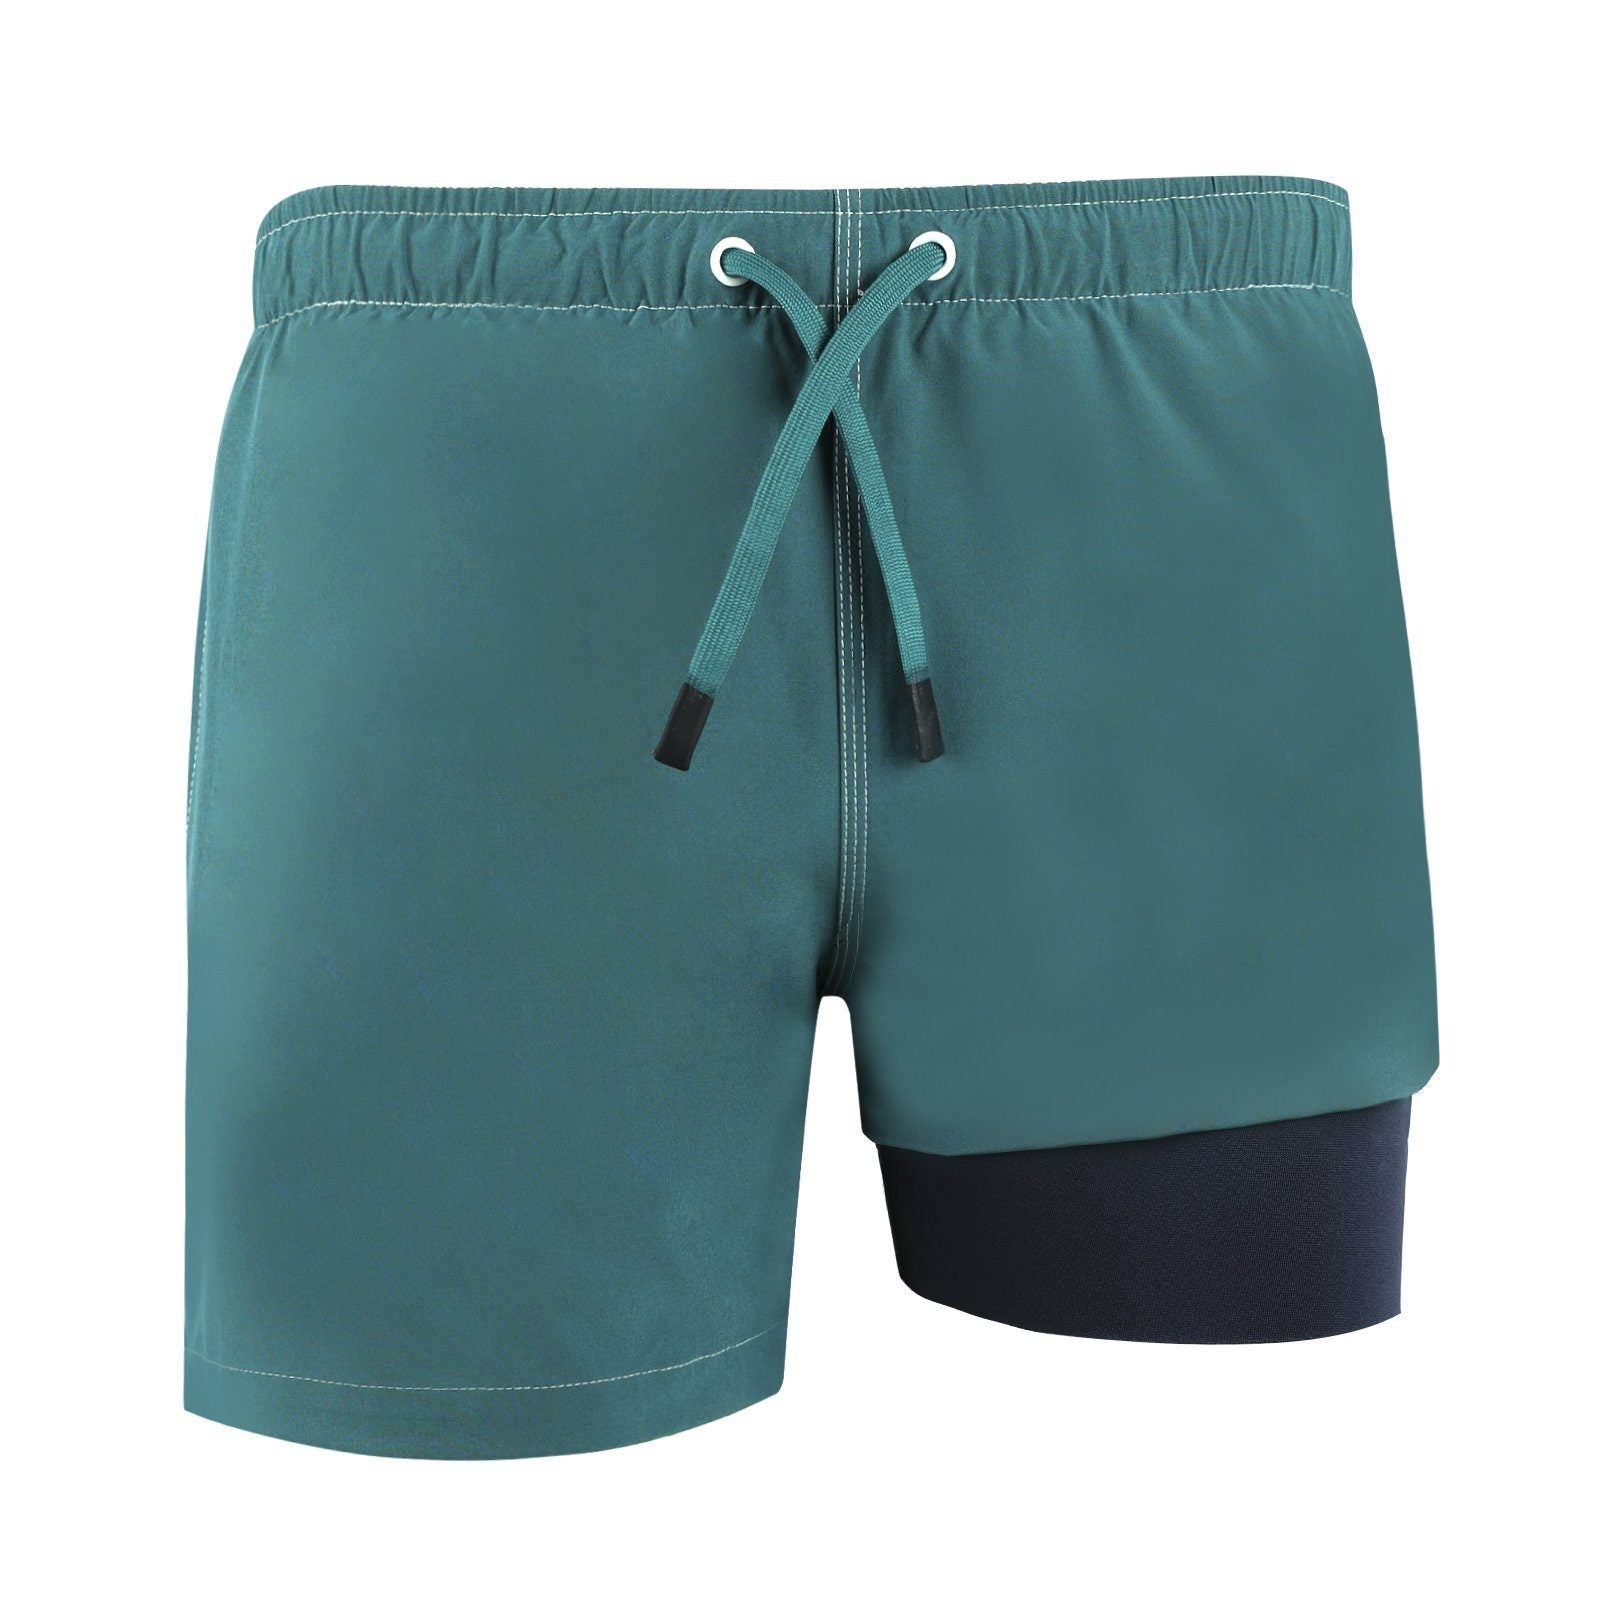 NoNetz Men's Retro Shorts Slim Fit Anti Chafe Swim Trunks - Green - L